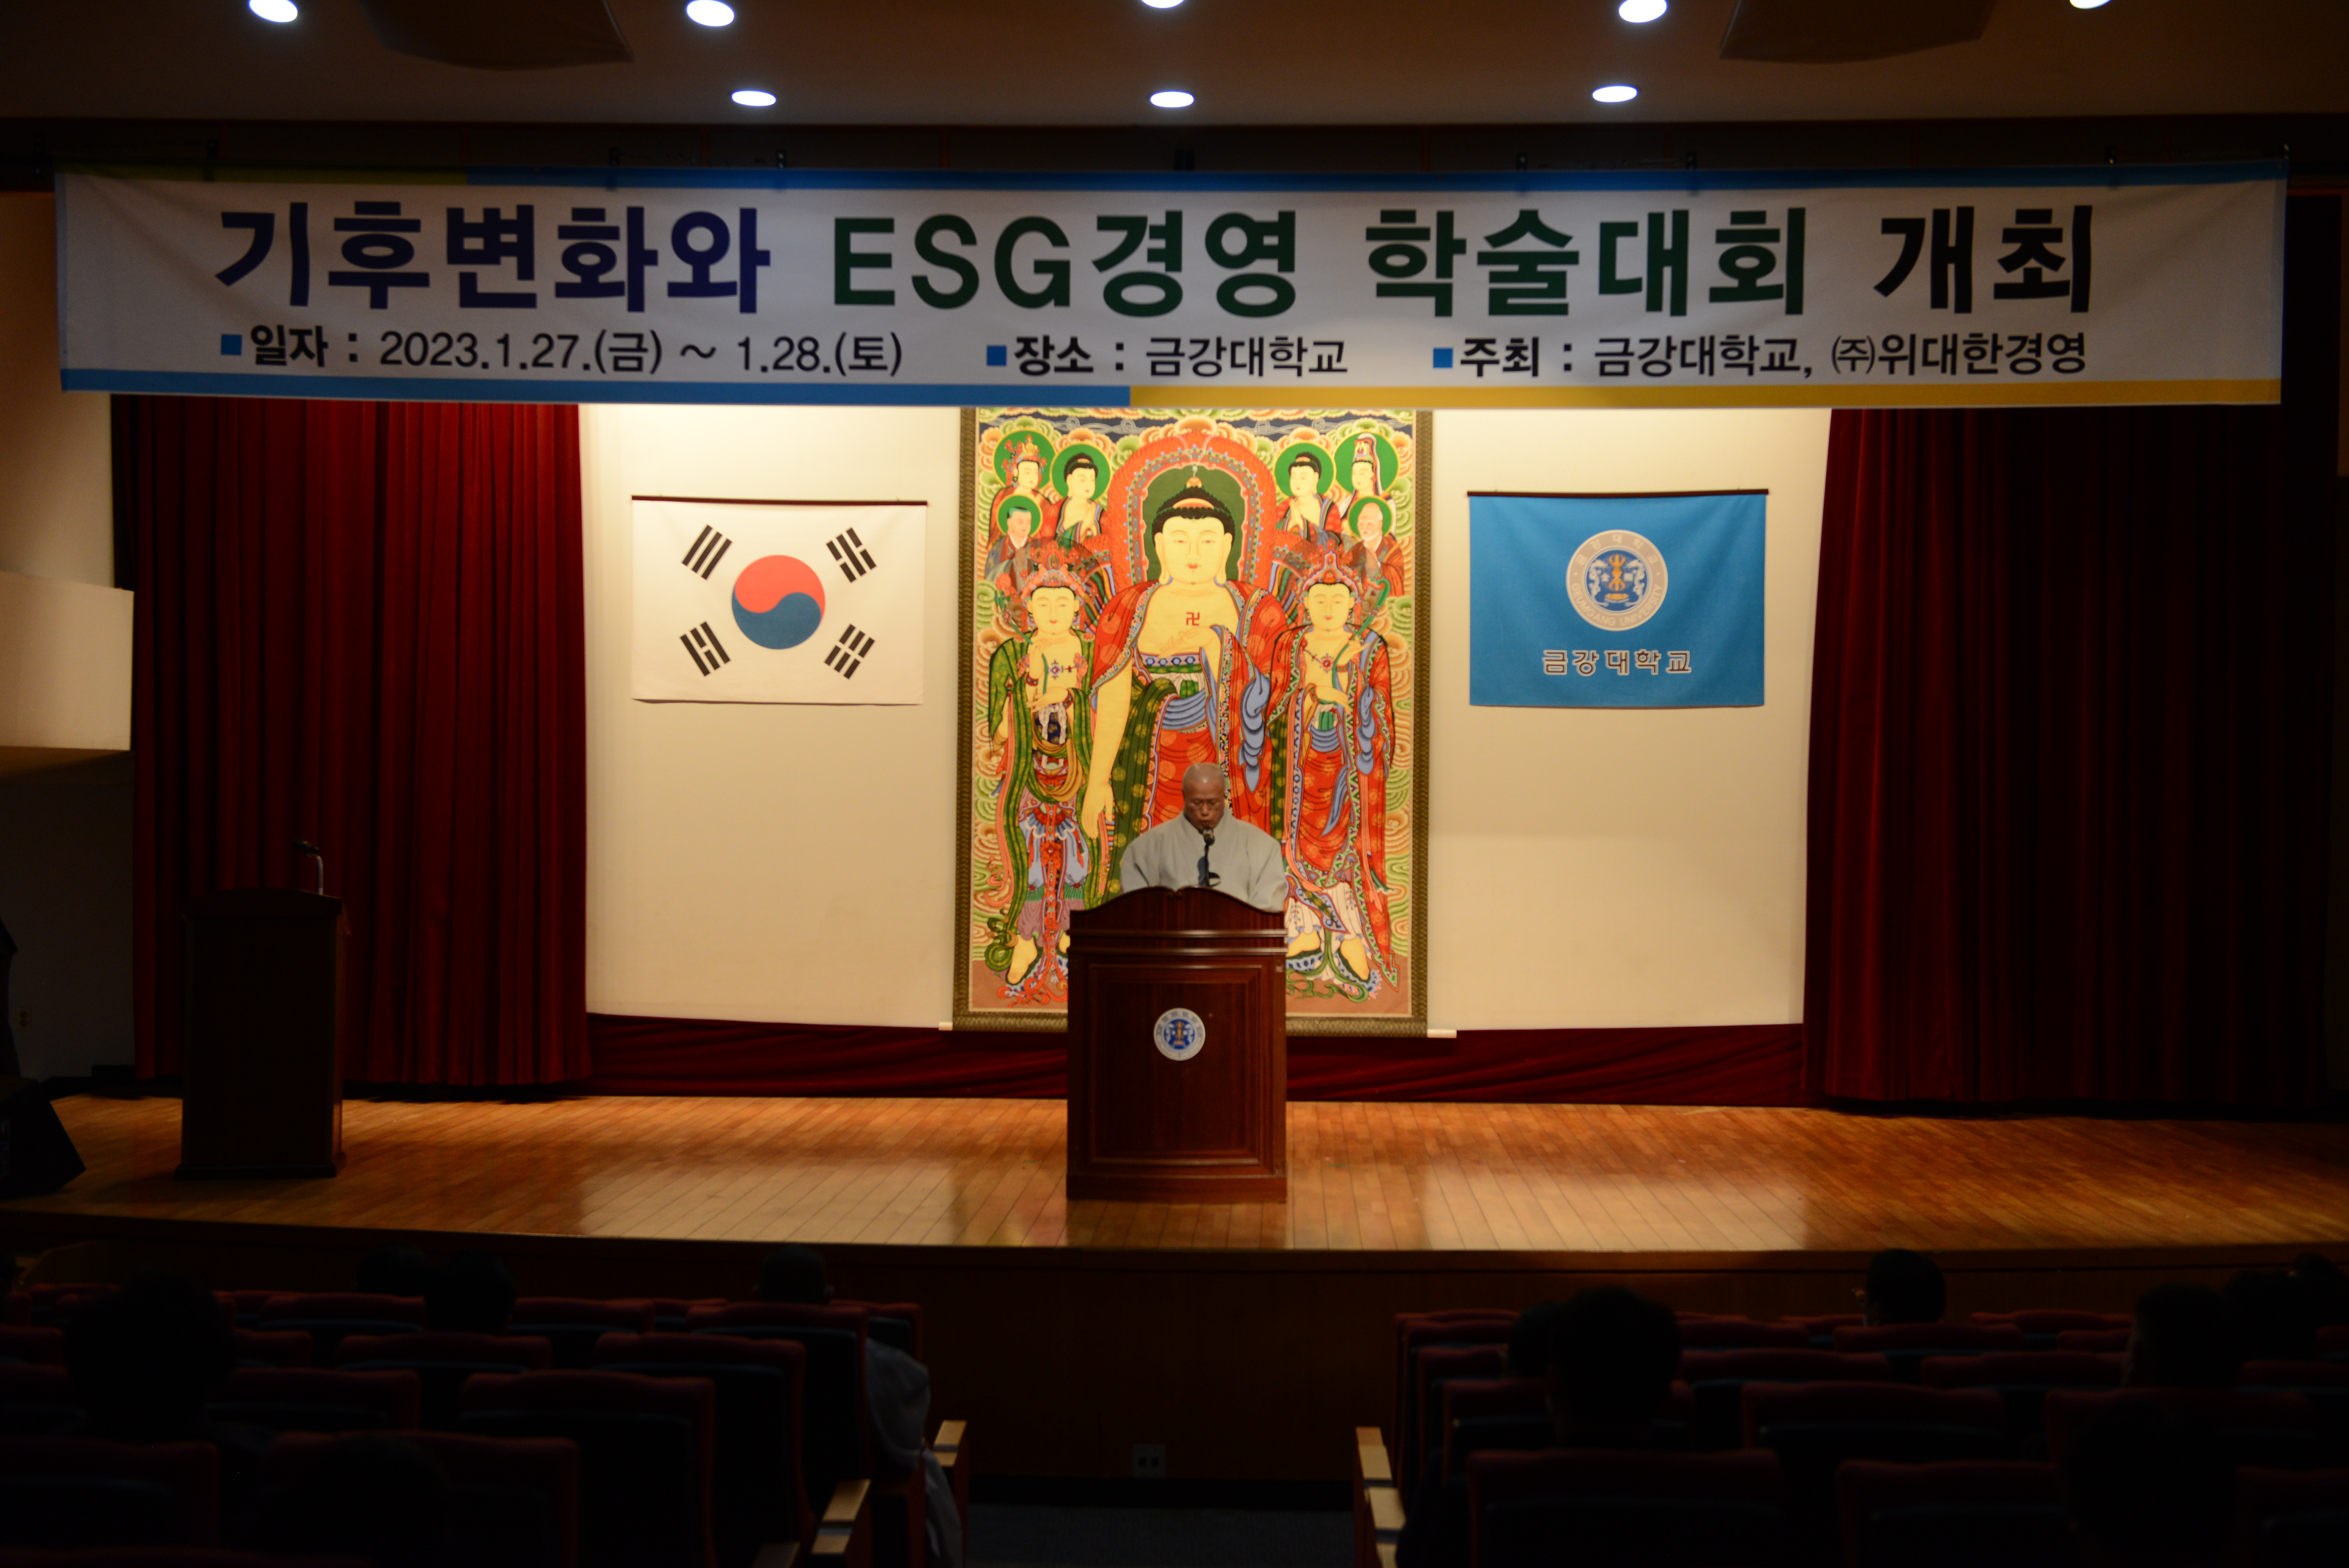 2023년 금강대학교 “기후변화와 ESG 경영” 학술 세미나 개최